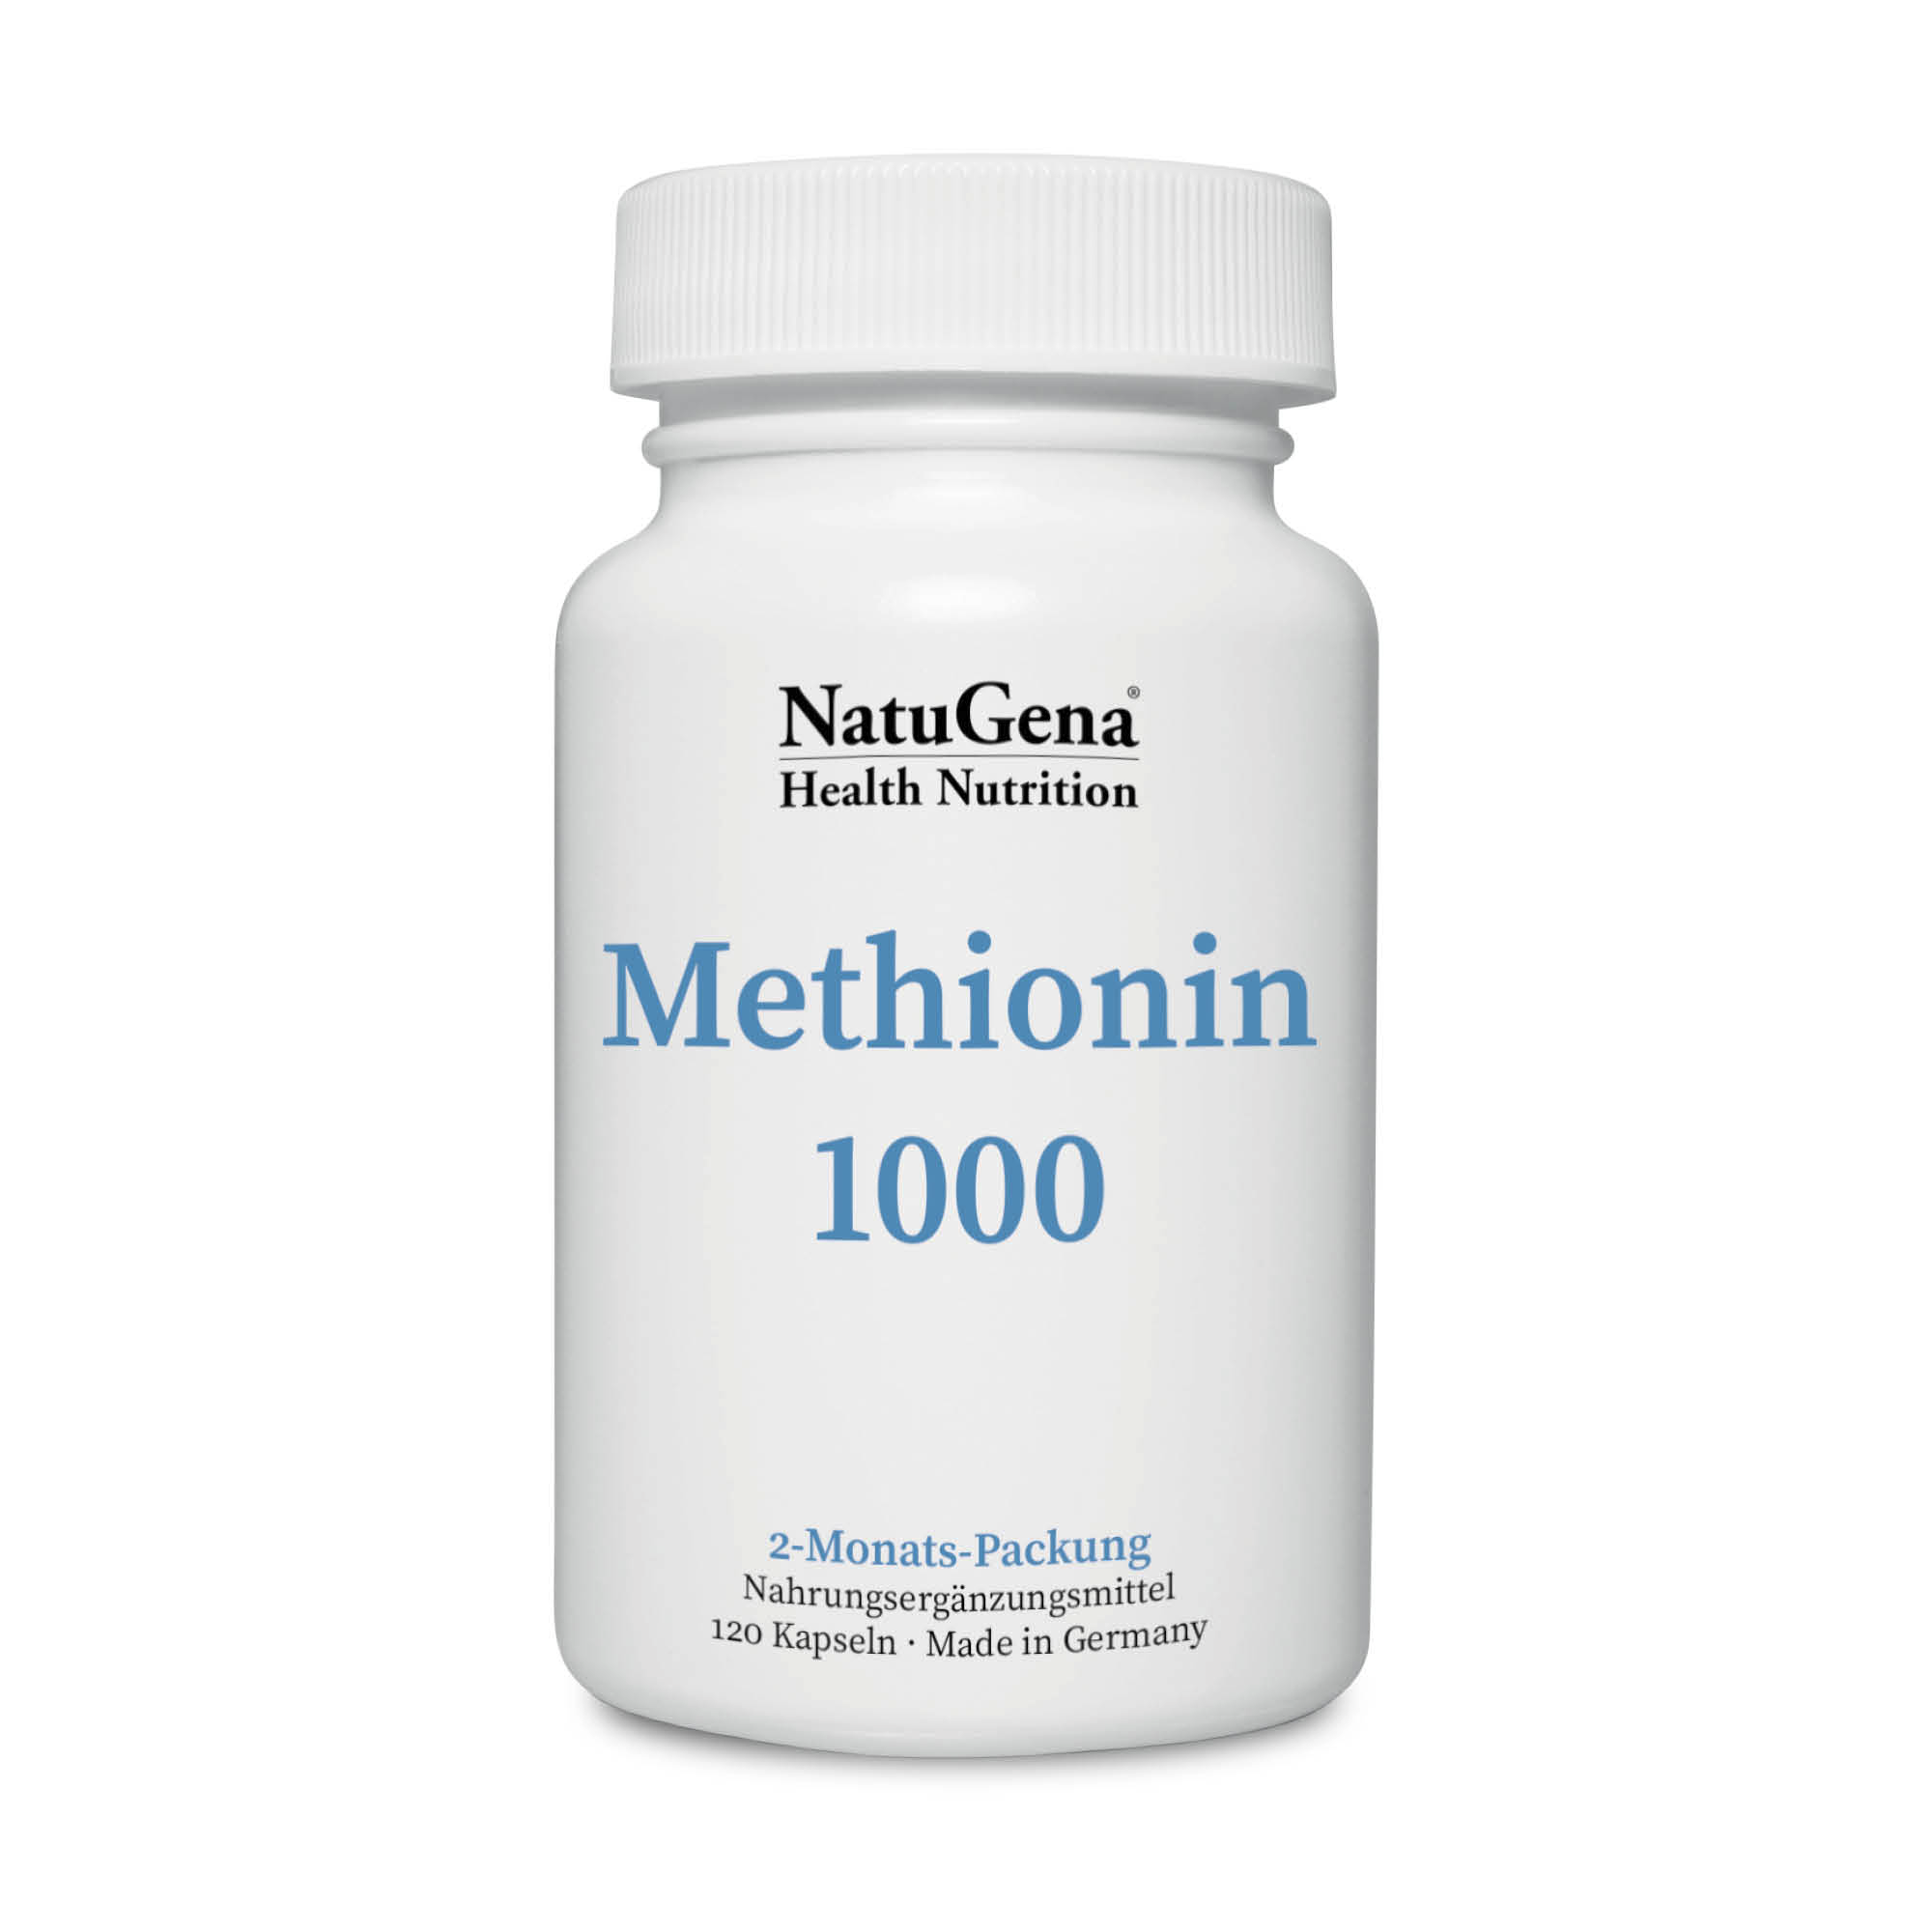 NatuGena Methionin 1000 | 120 Kapseln | Essentielle schwefelhaltige Aminosäure, Quelle für organischen Schwefel